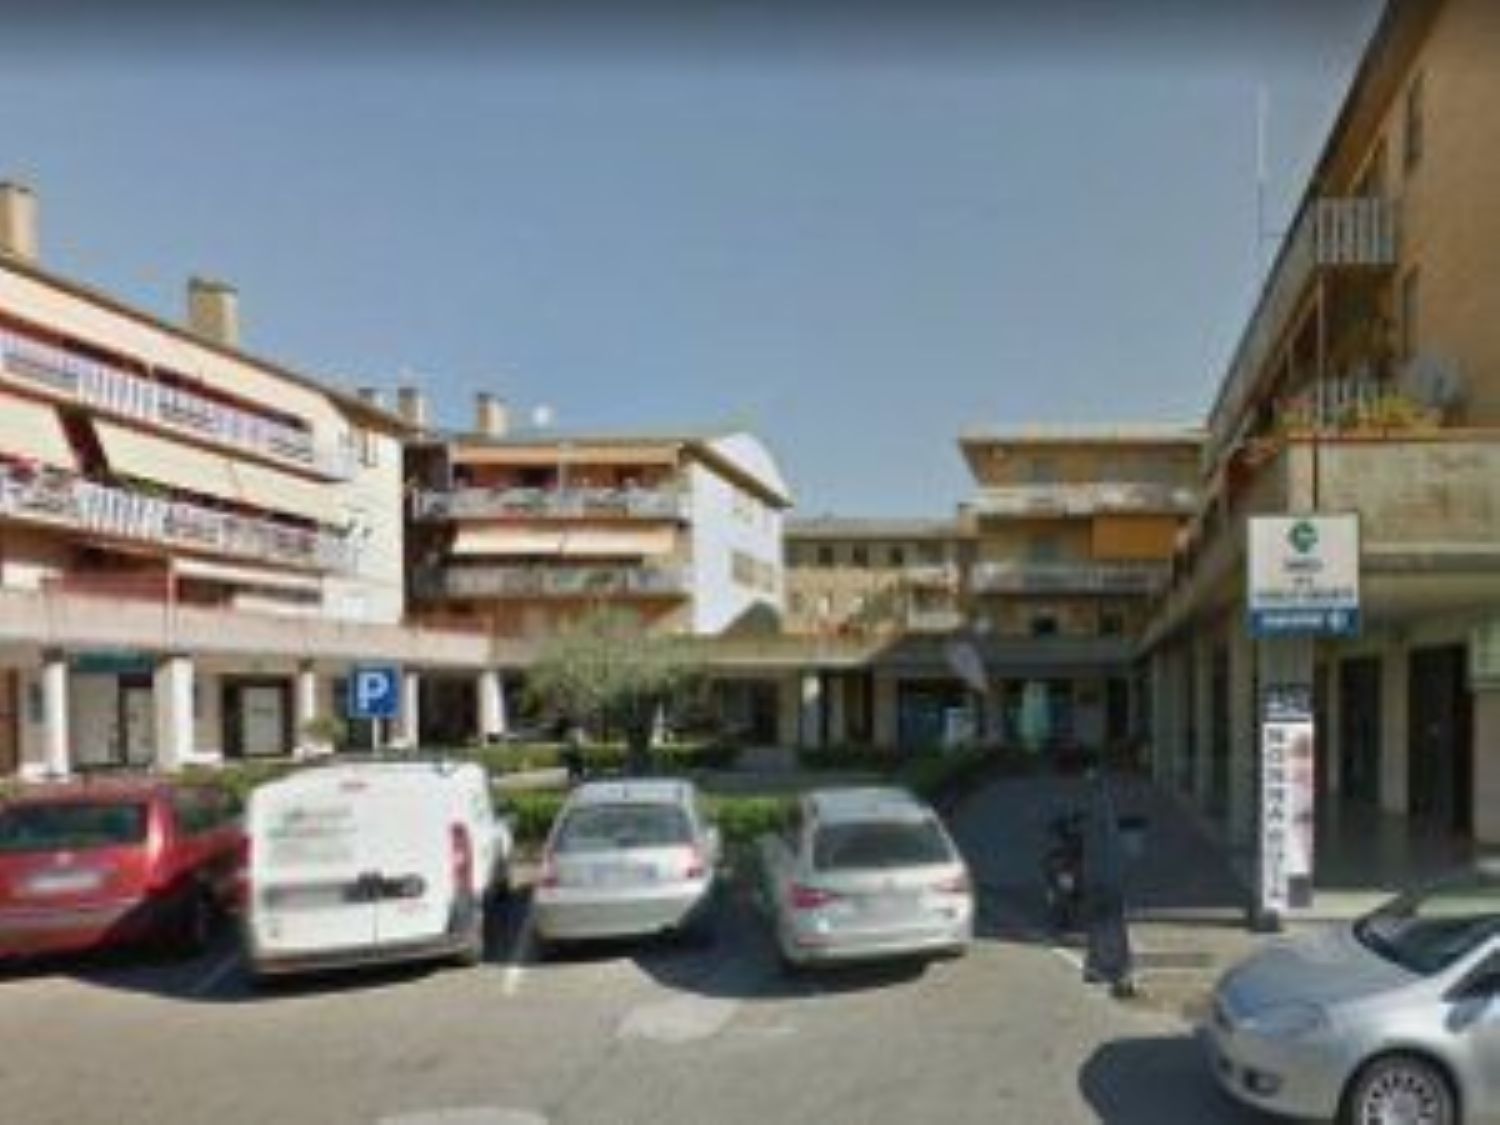 Ufficio / Studio in vendita a Orbetello, 9999 locali, prezzo € 117.129 | PortaleAgenzieImmobiliari.it